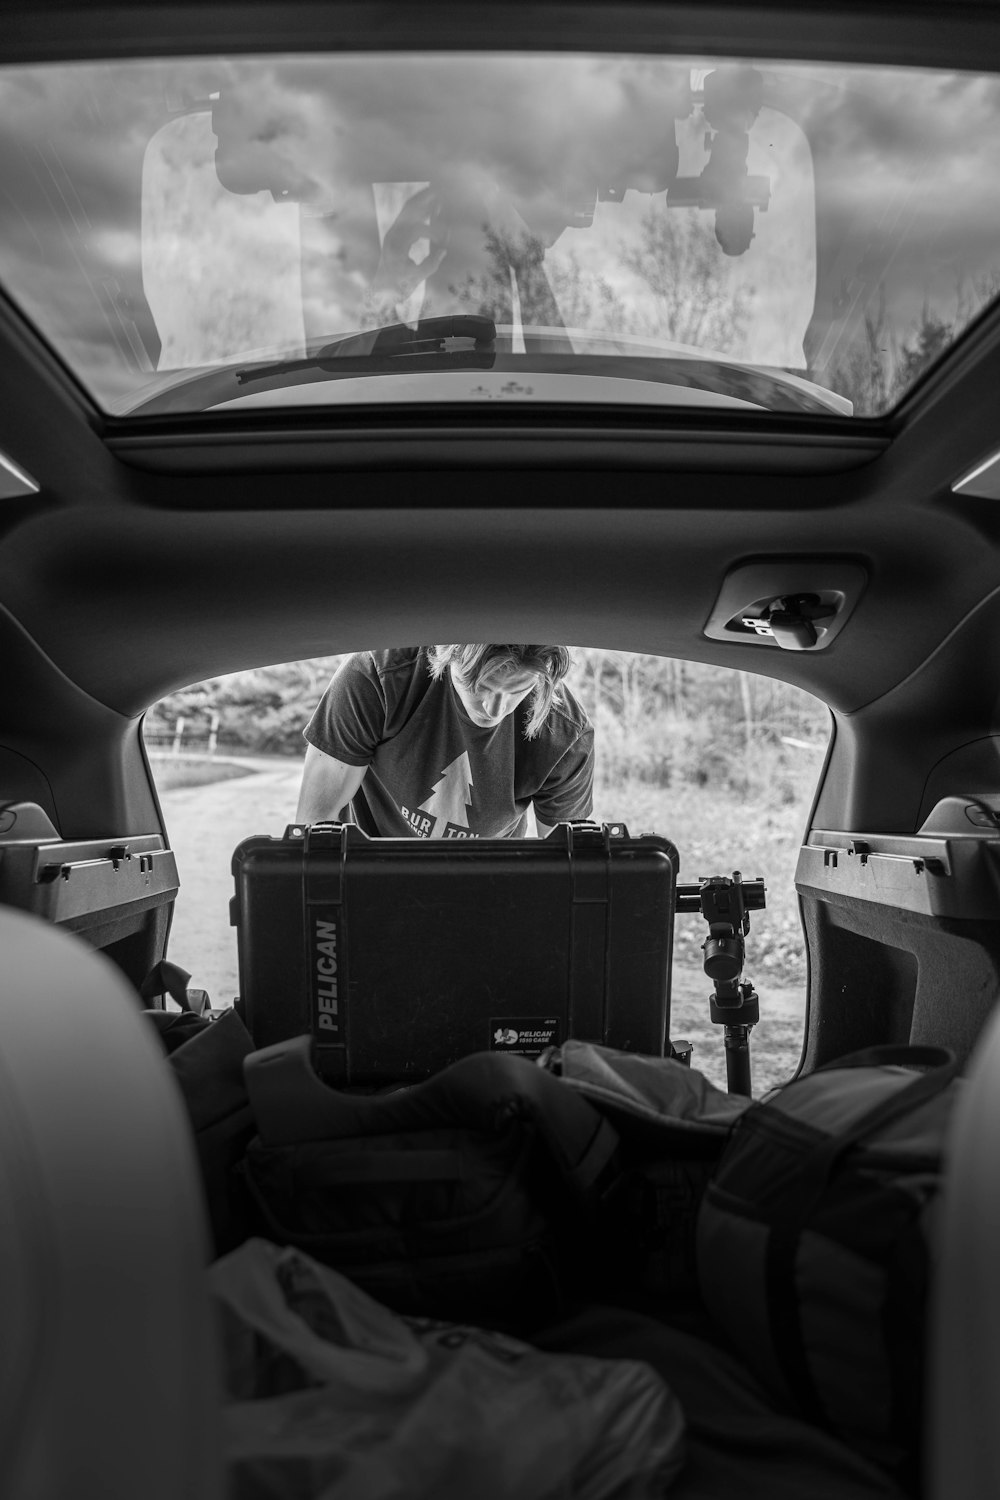 Foto en escala de grises de una persona sentada en el asiento del automóvil